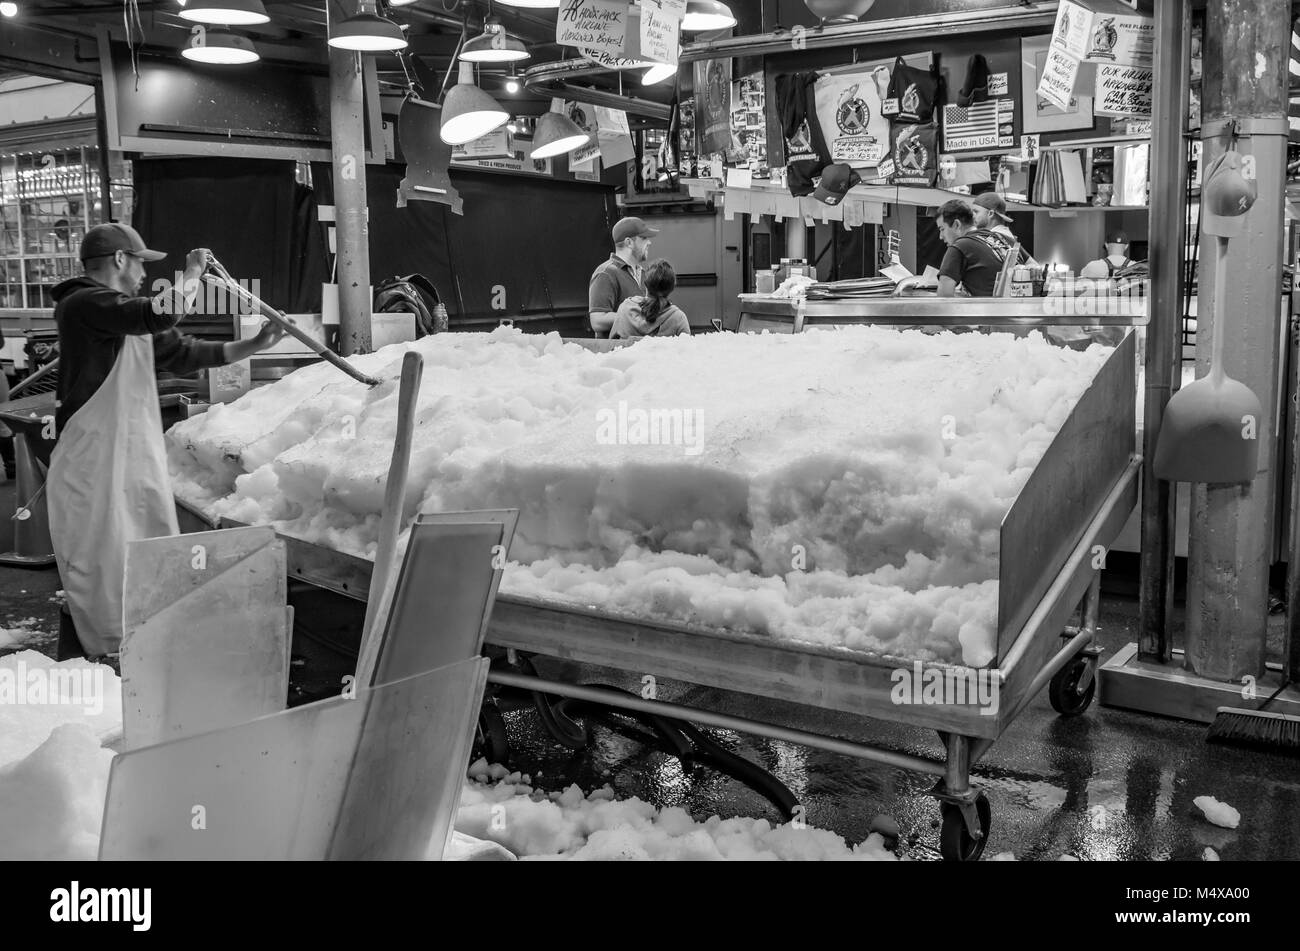 La mise en place d'un des marchands de poisson poisson glacé afficher Pike Place Market à Seattle, Washington, USA Banque D'Images